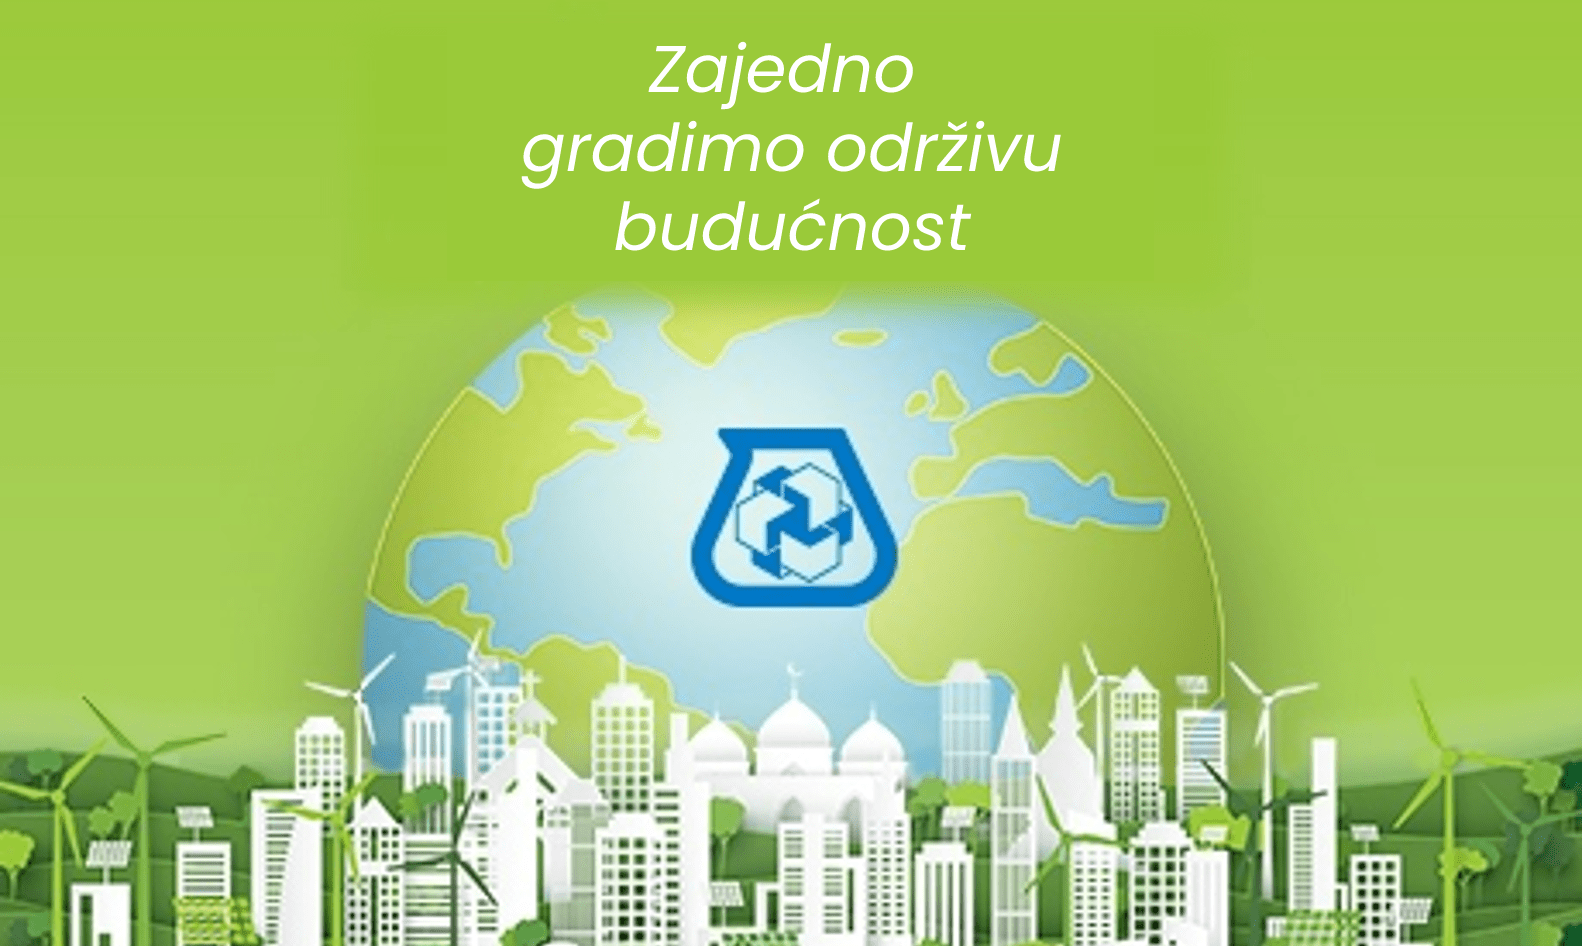 Poster horizonta grada s globusom u prvom planu. Na sredini se nalazi Mapei logo iznad kojeg je napisano Zajedno gradimo održivu budućnost.